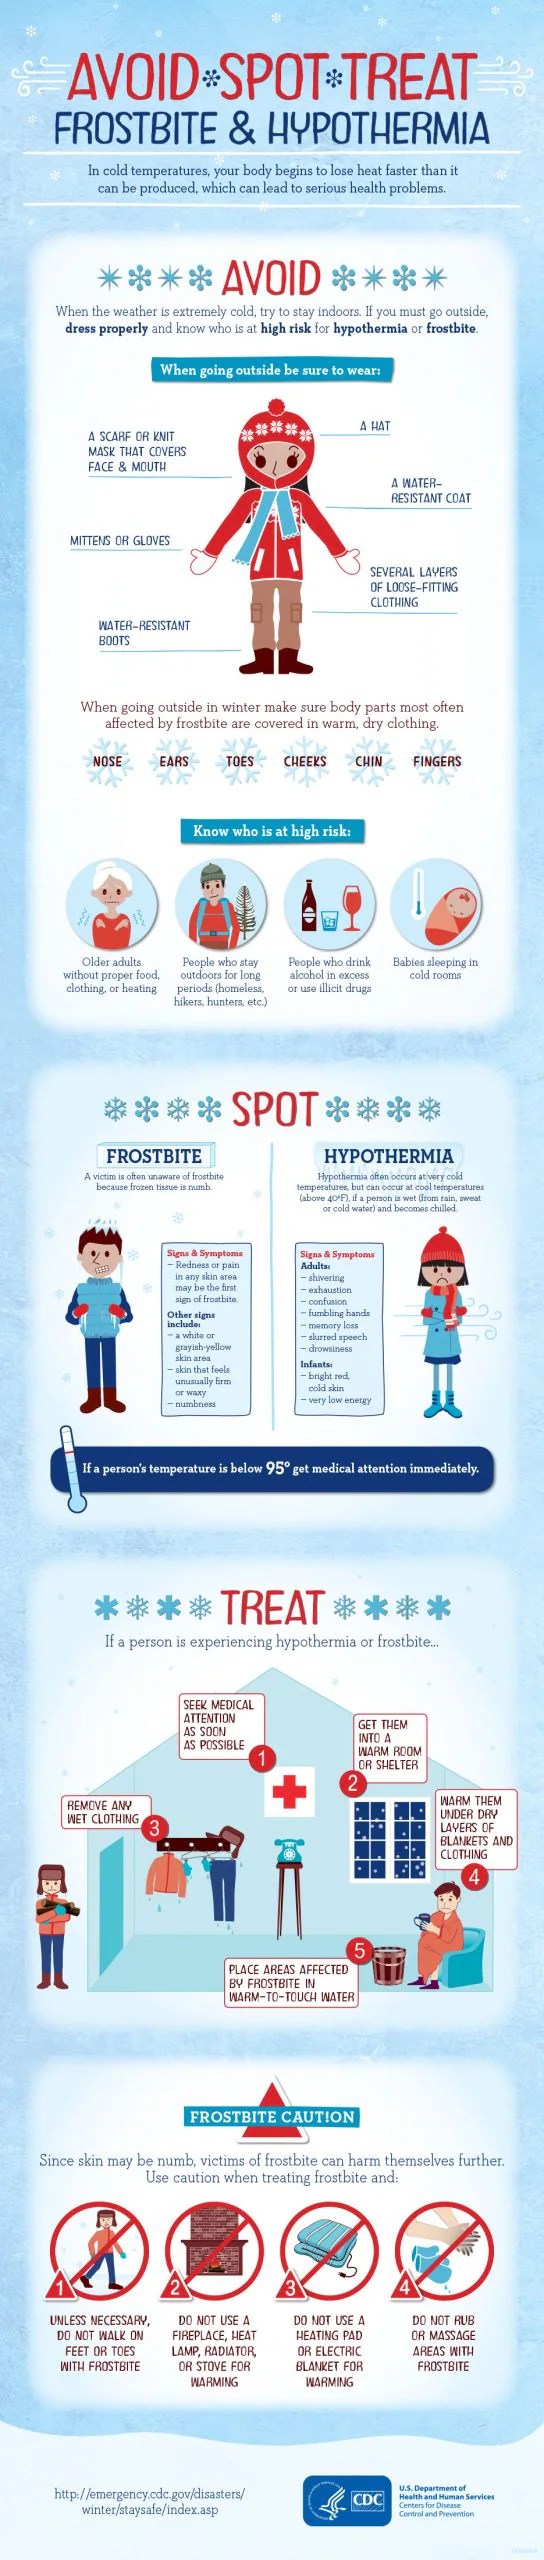 इन्फोग्राफ़िक: स्पॉट ट्रीट से बचें: शीतदंश और हाइपोथर्मिया